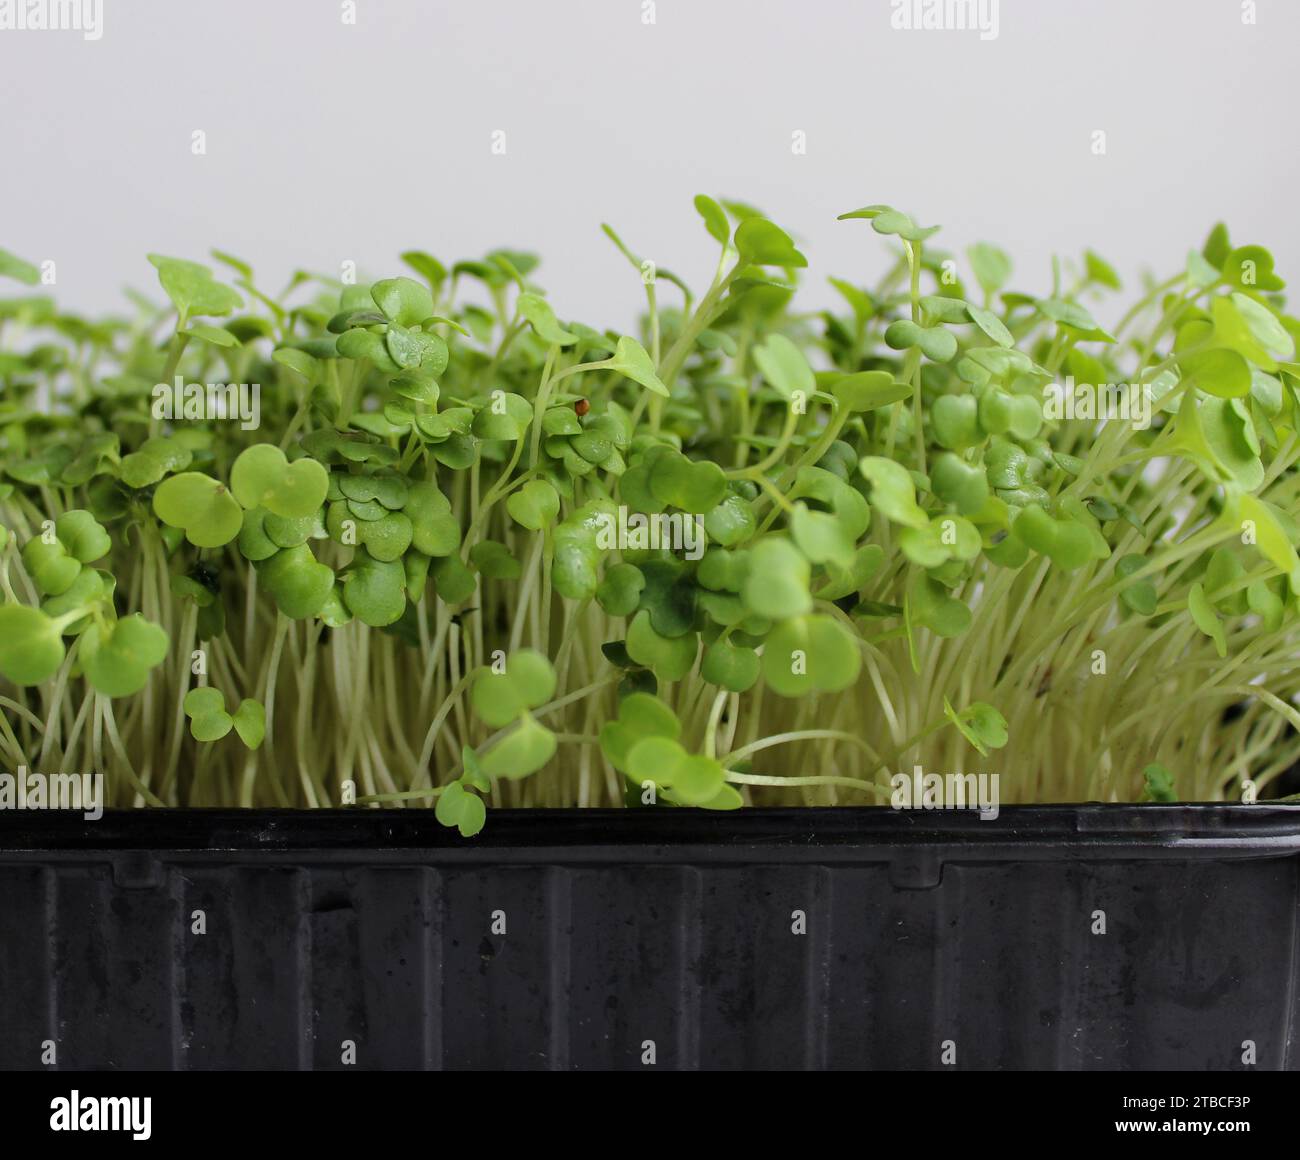 Vue de côté de la croissance de Arugula Microgreens Bunch dans Un plateau plat photo stock détaillée Banque D'Images